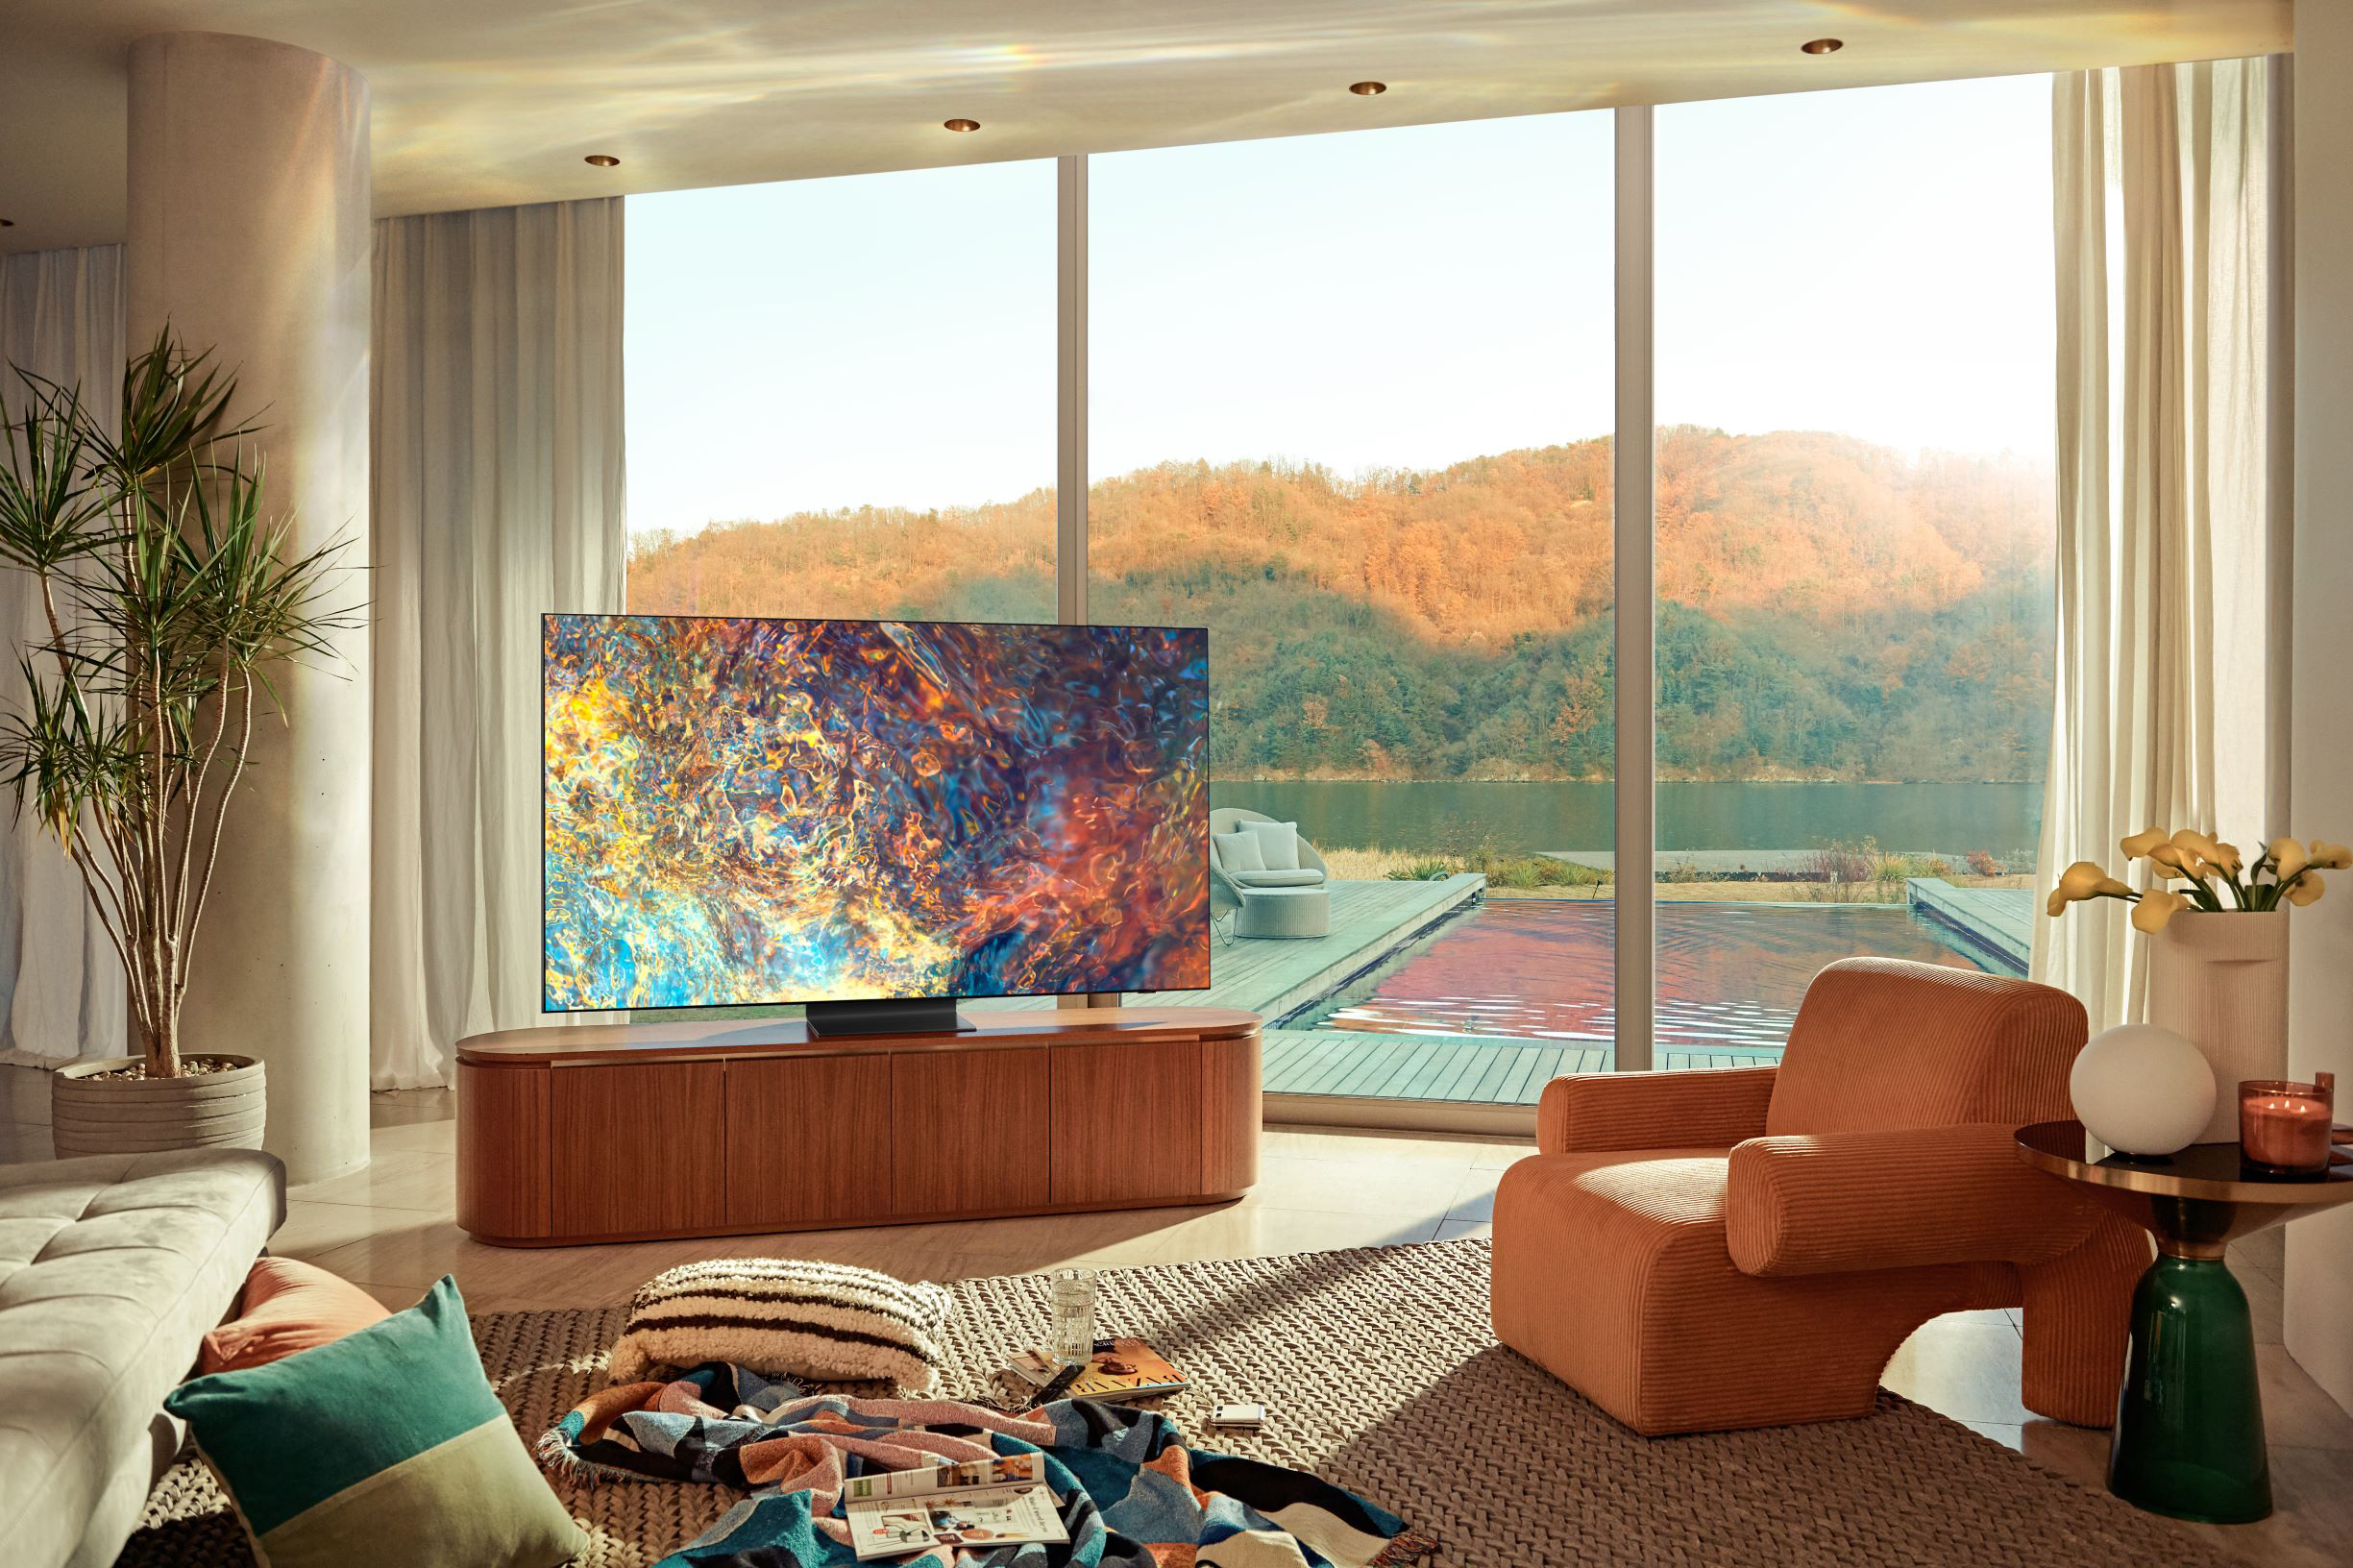 Samsung Electronics presenta las líneas de TV 2021 Neo QLED, MICRO LED y Lifestyle, destacando el compromiso con un futuro sostenible y accesible